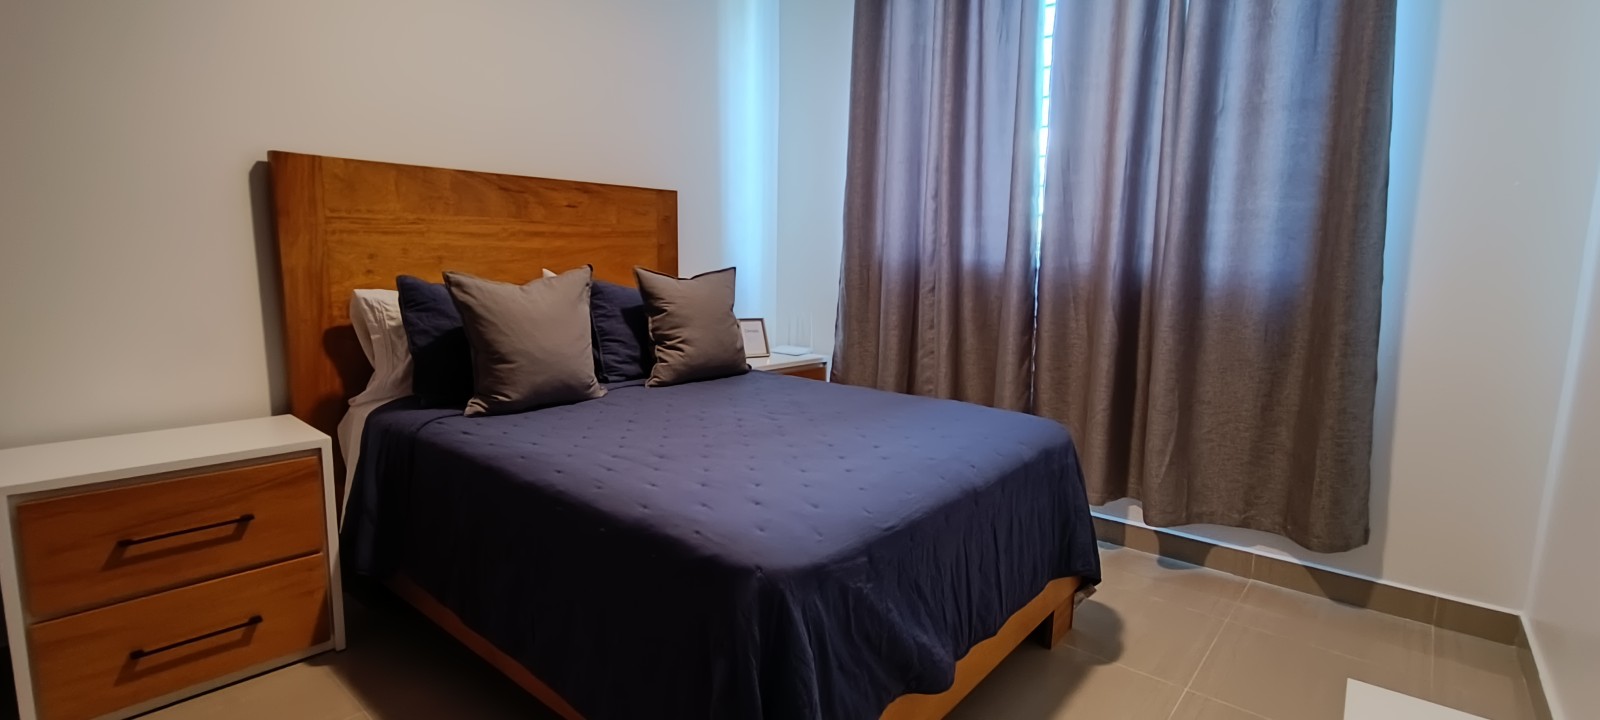 apartamentos - Vendo 4to piso Amueblado para inversión airbnb en el despertar 0